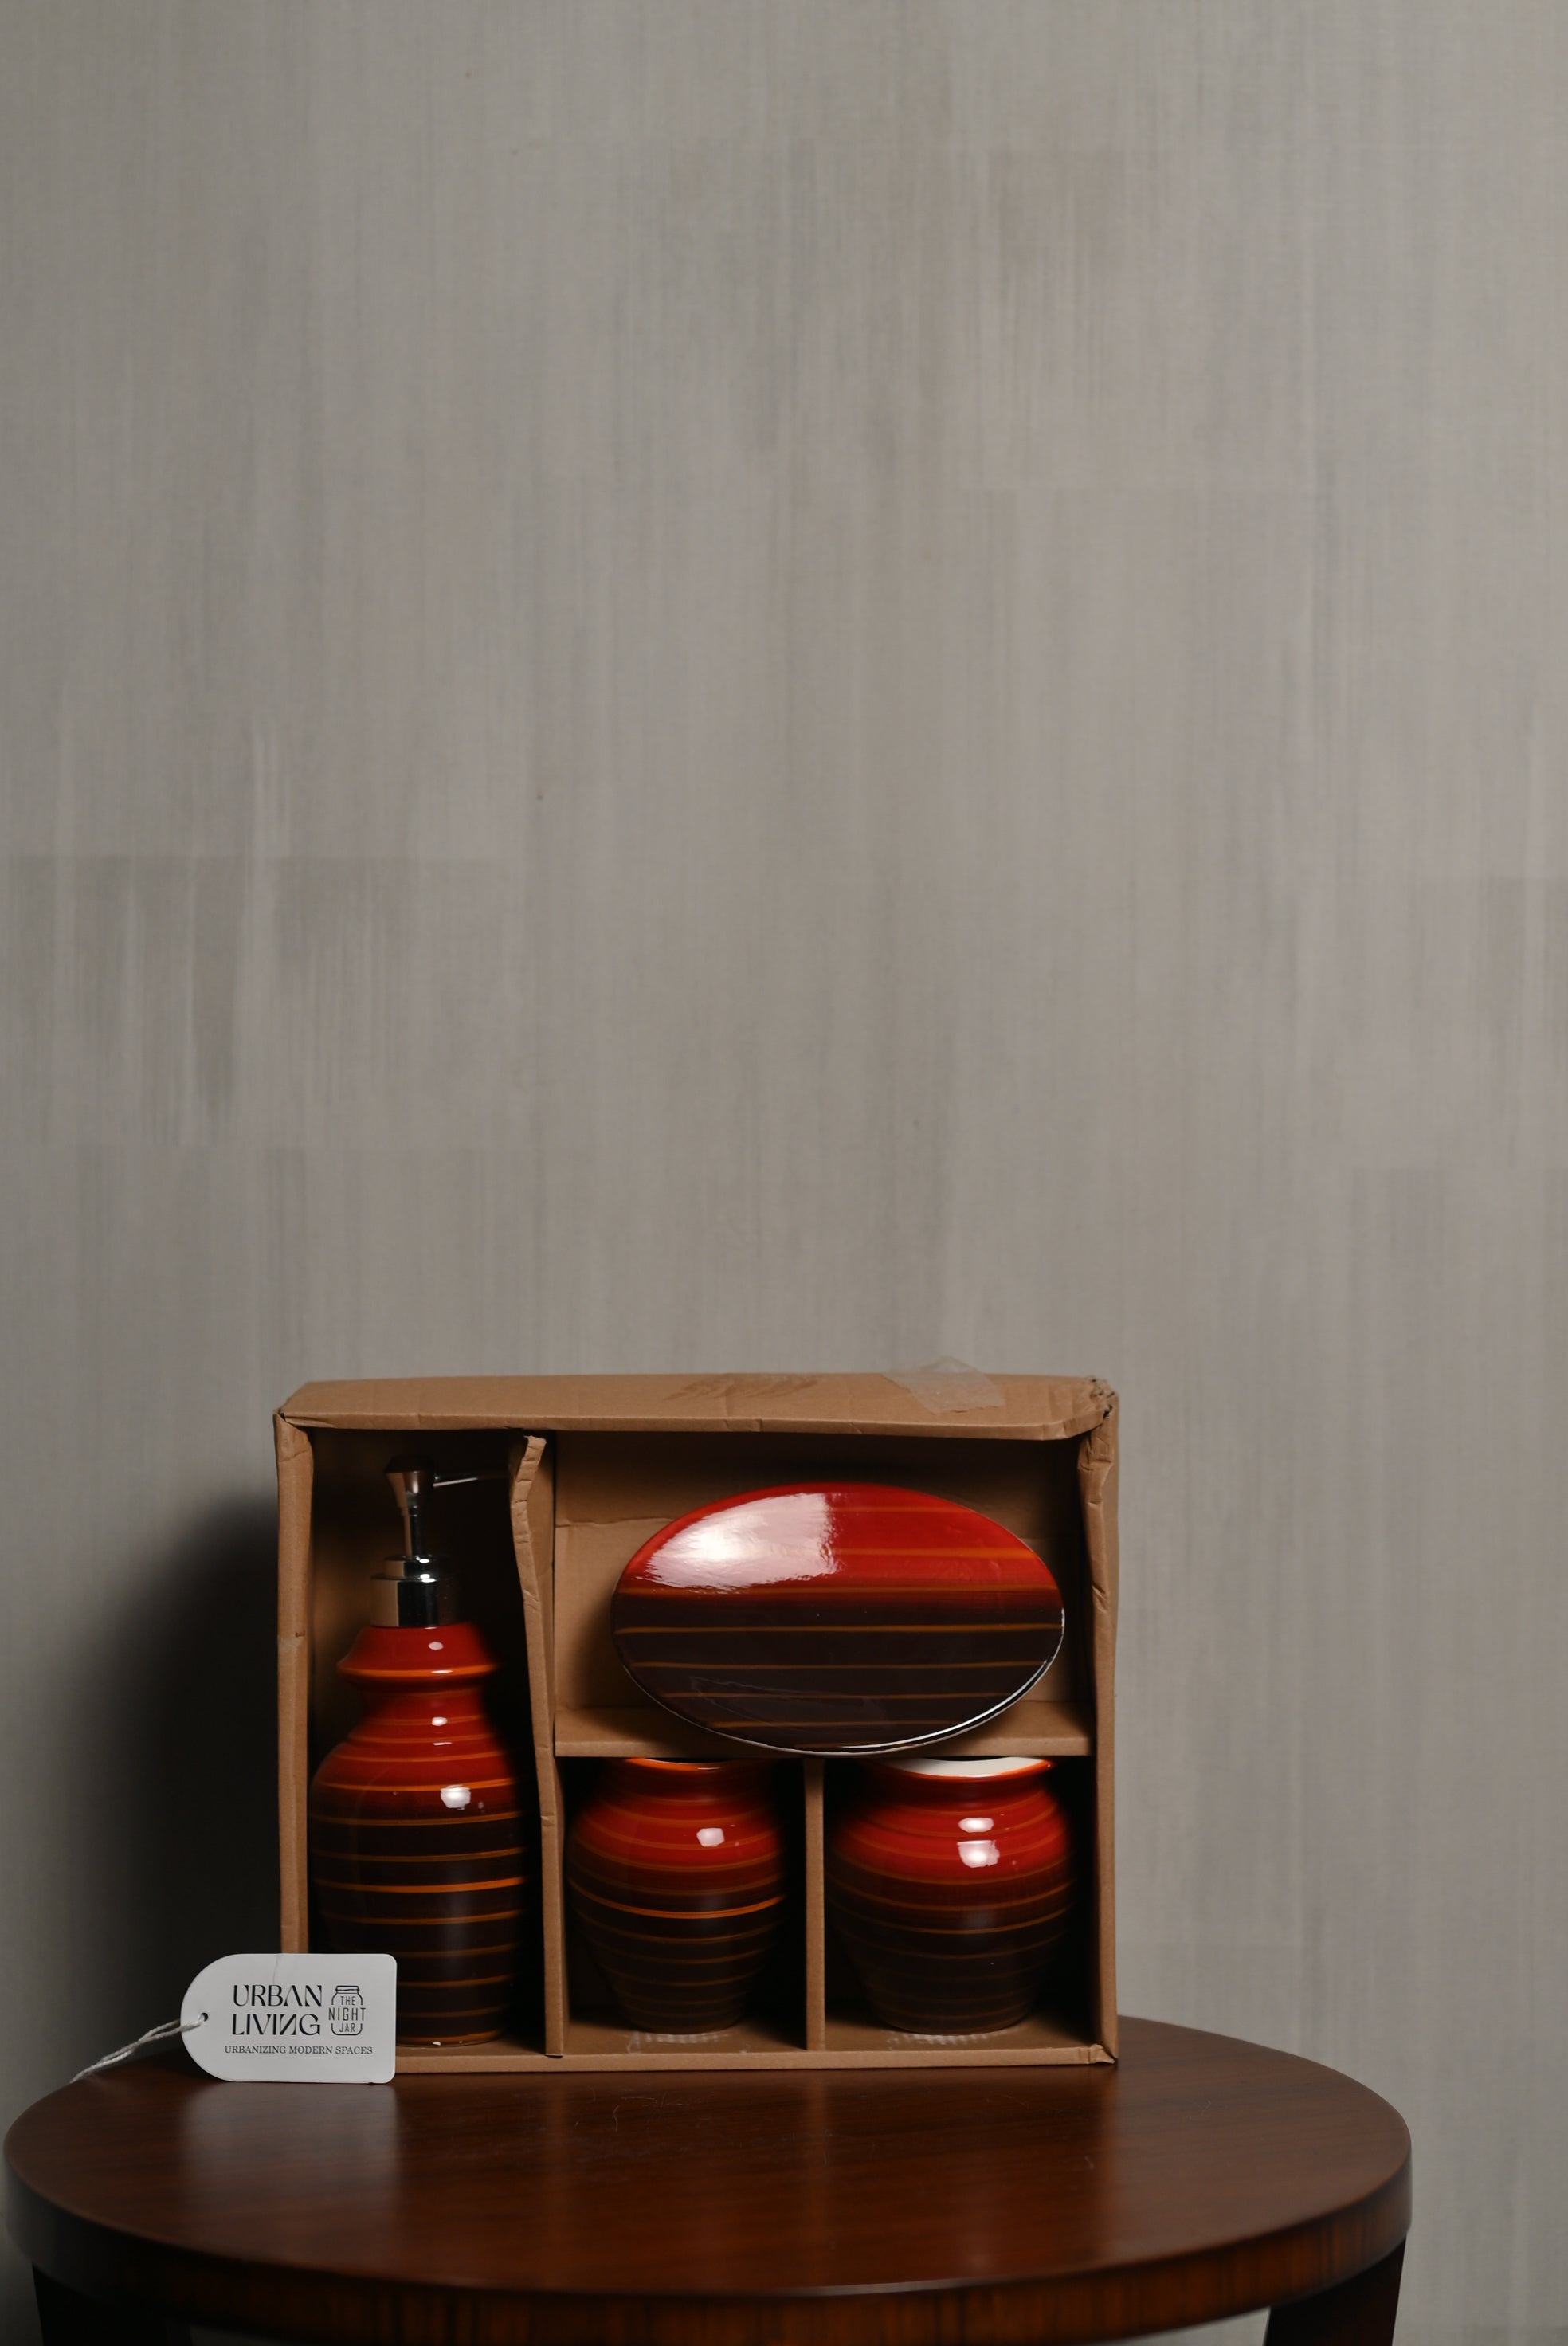 Premium Red & Brown Ceramic Bathroom Set of 4